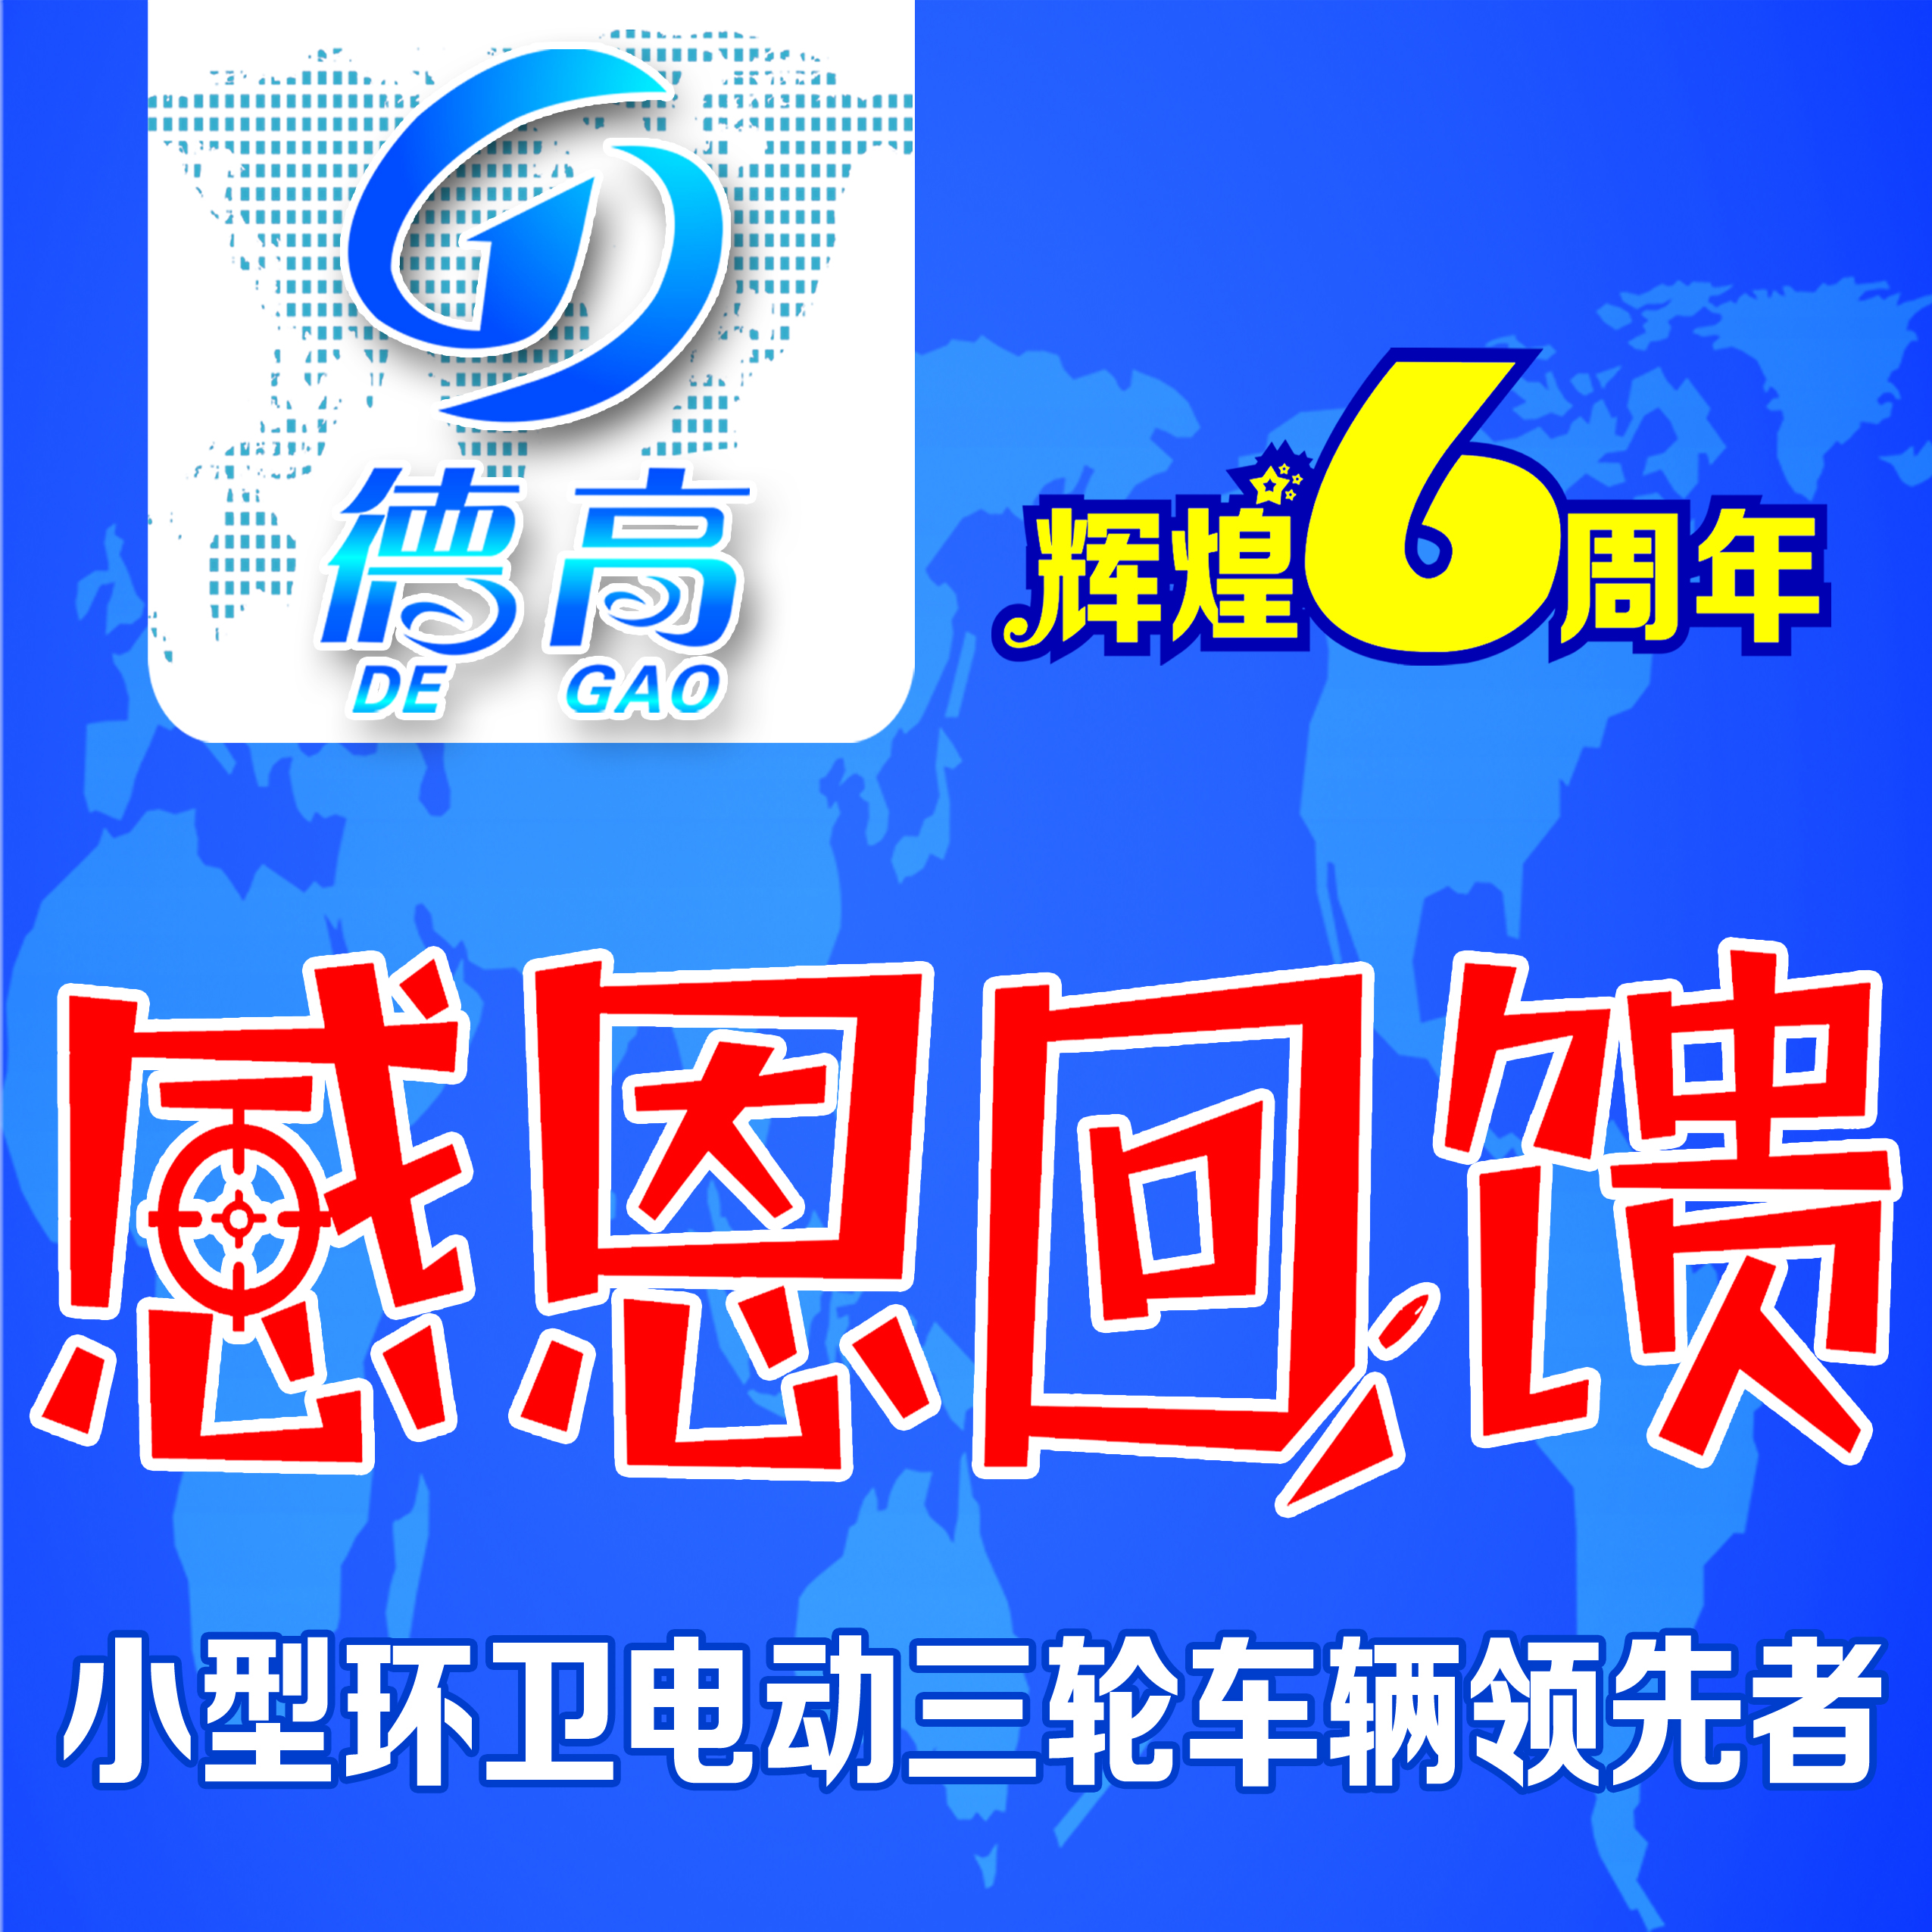 徐州j9九游会 - 真人游戏第一品牌保洁车六周年感…